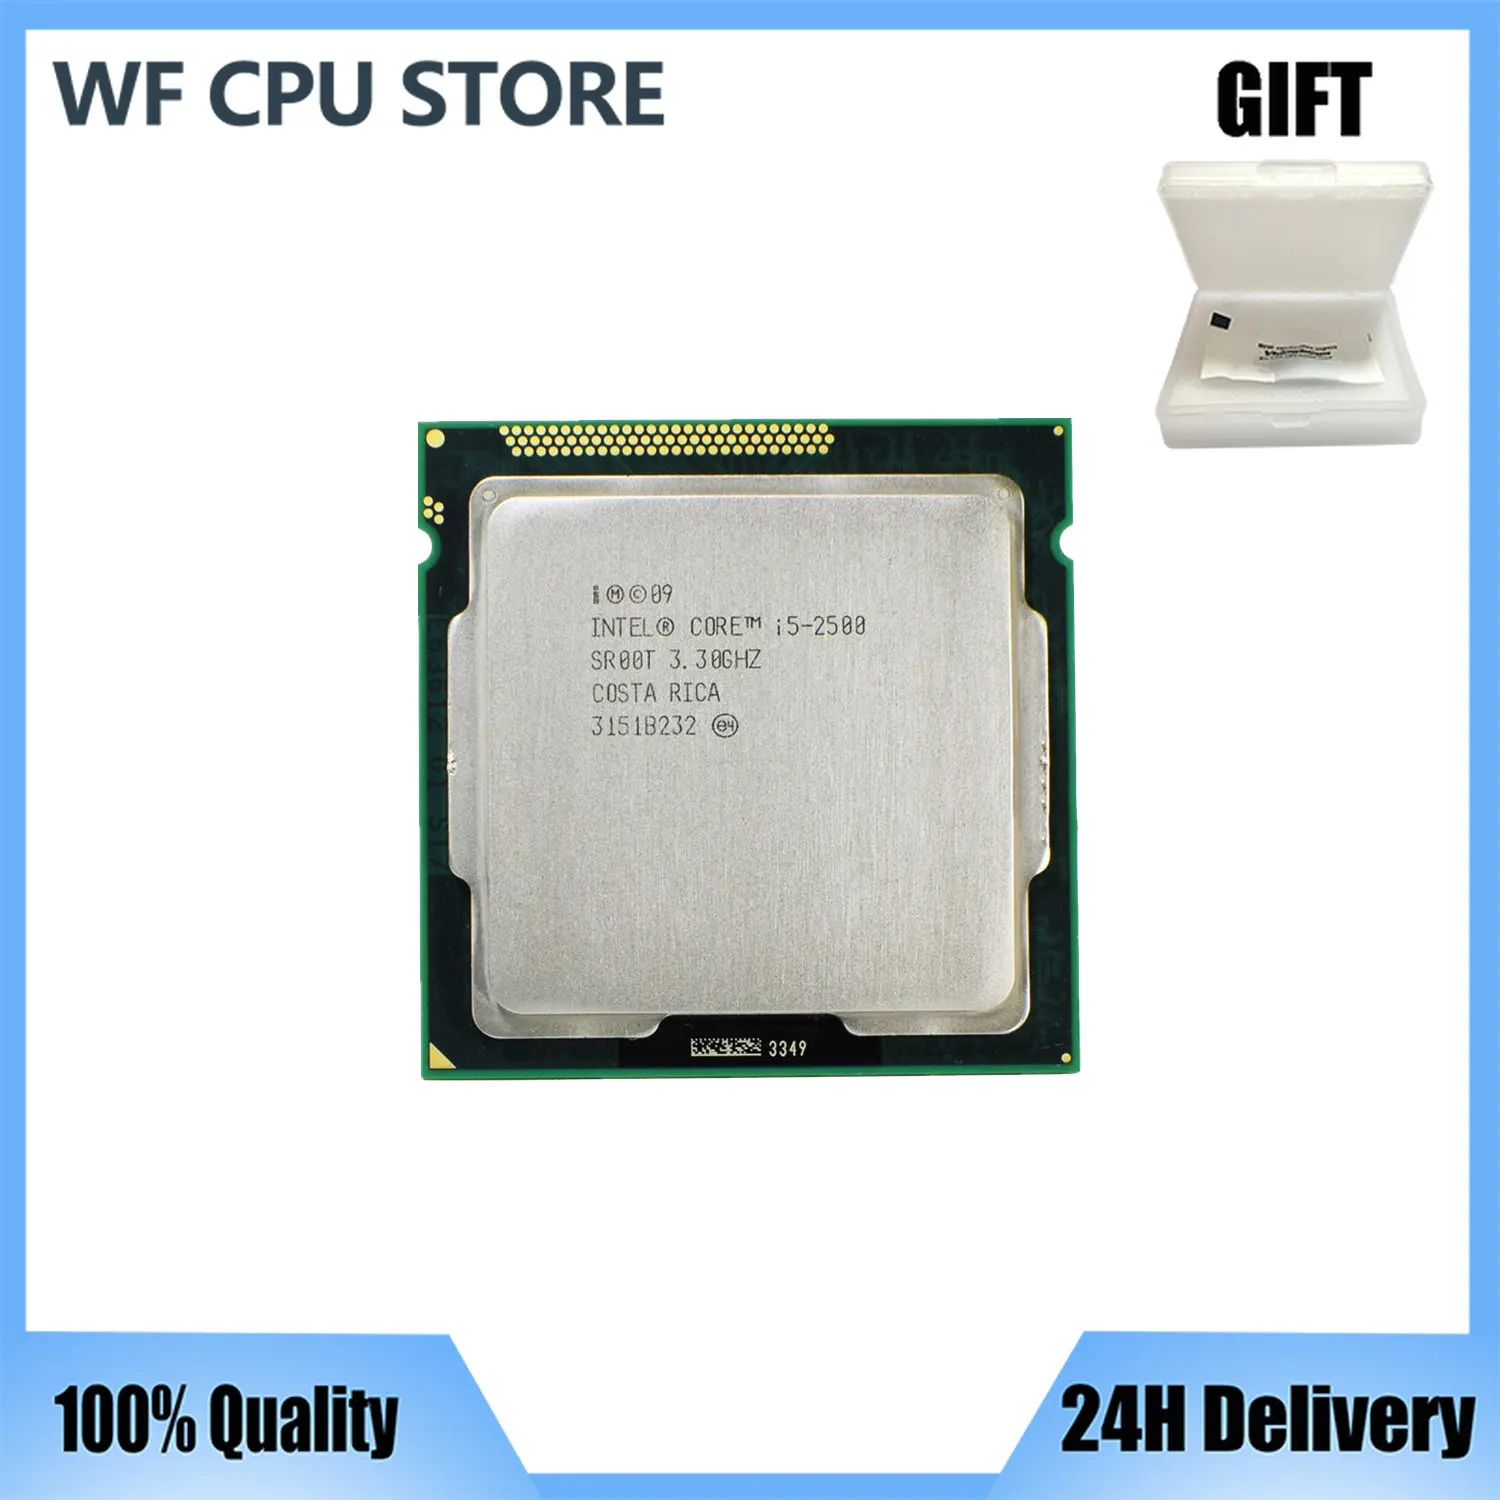 

Intel Core i5 2500 3.3GHz 6M 5.0GT/s SR00T CPU Quad-Core Desktop Processor LGA1155